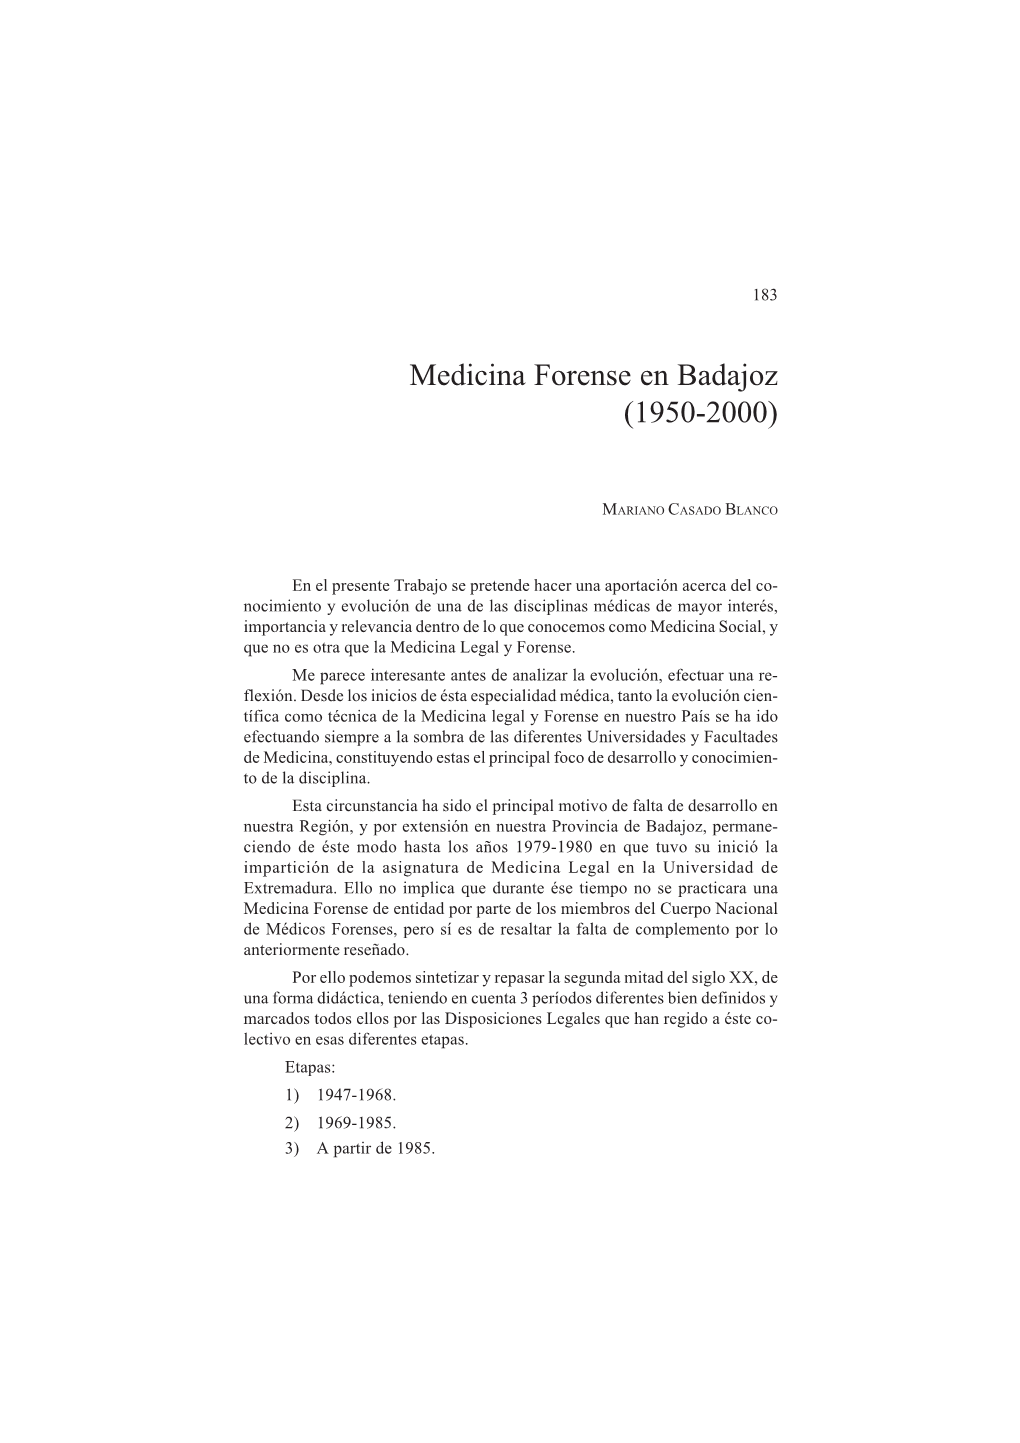 Medicina Forense En Badajoz (1950-2000)